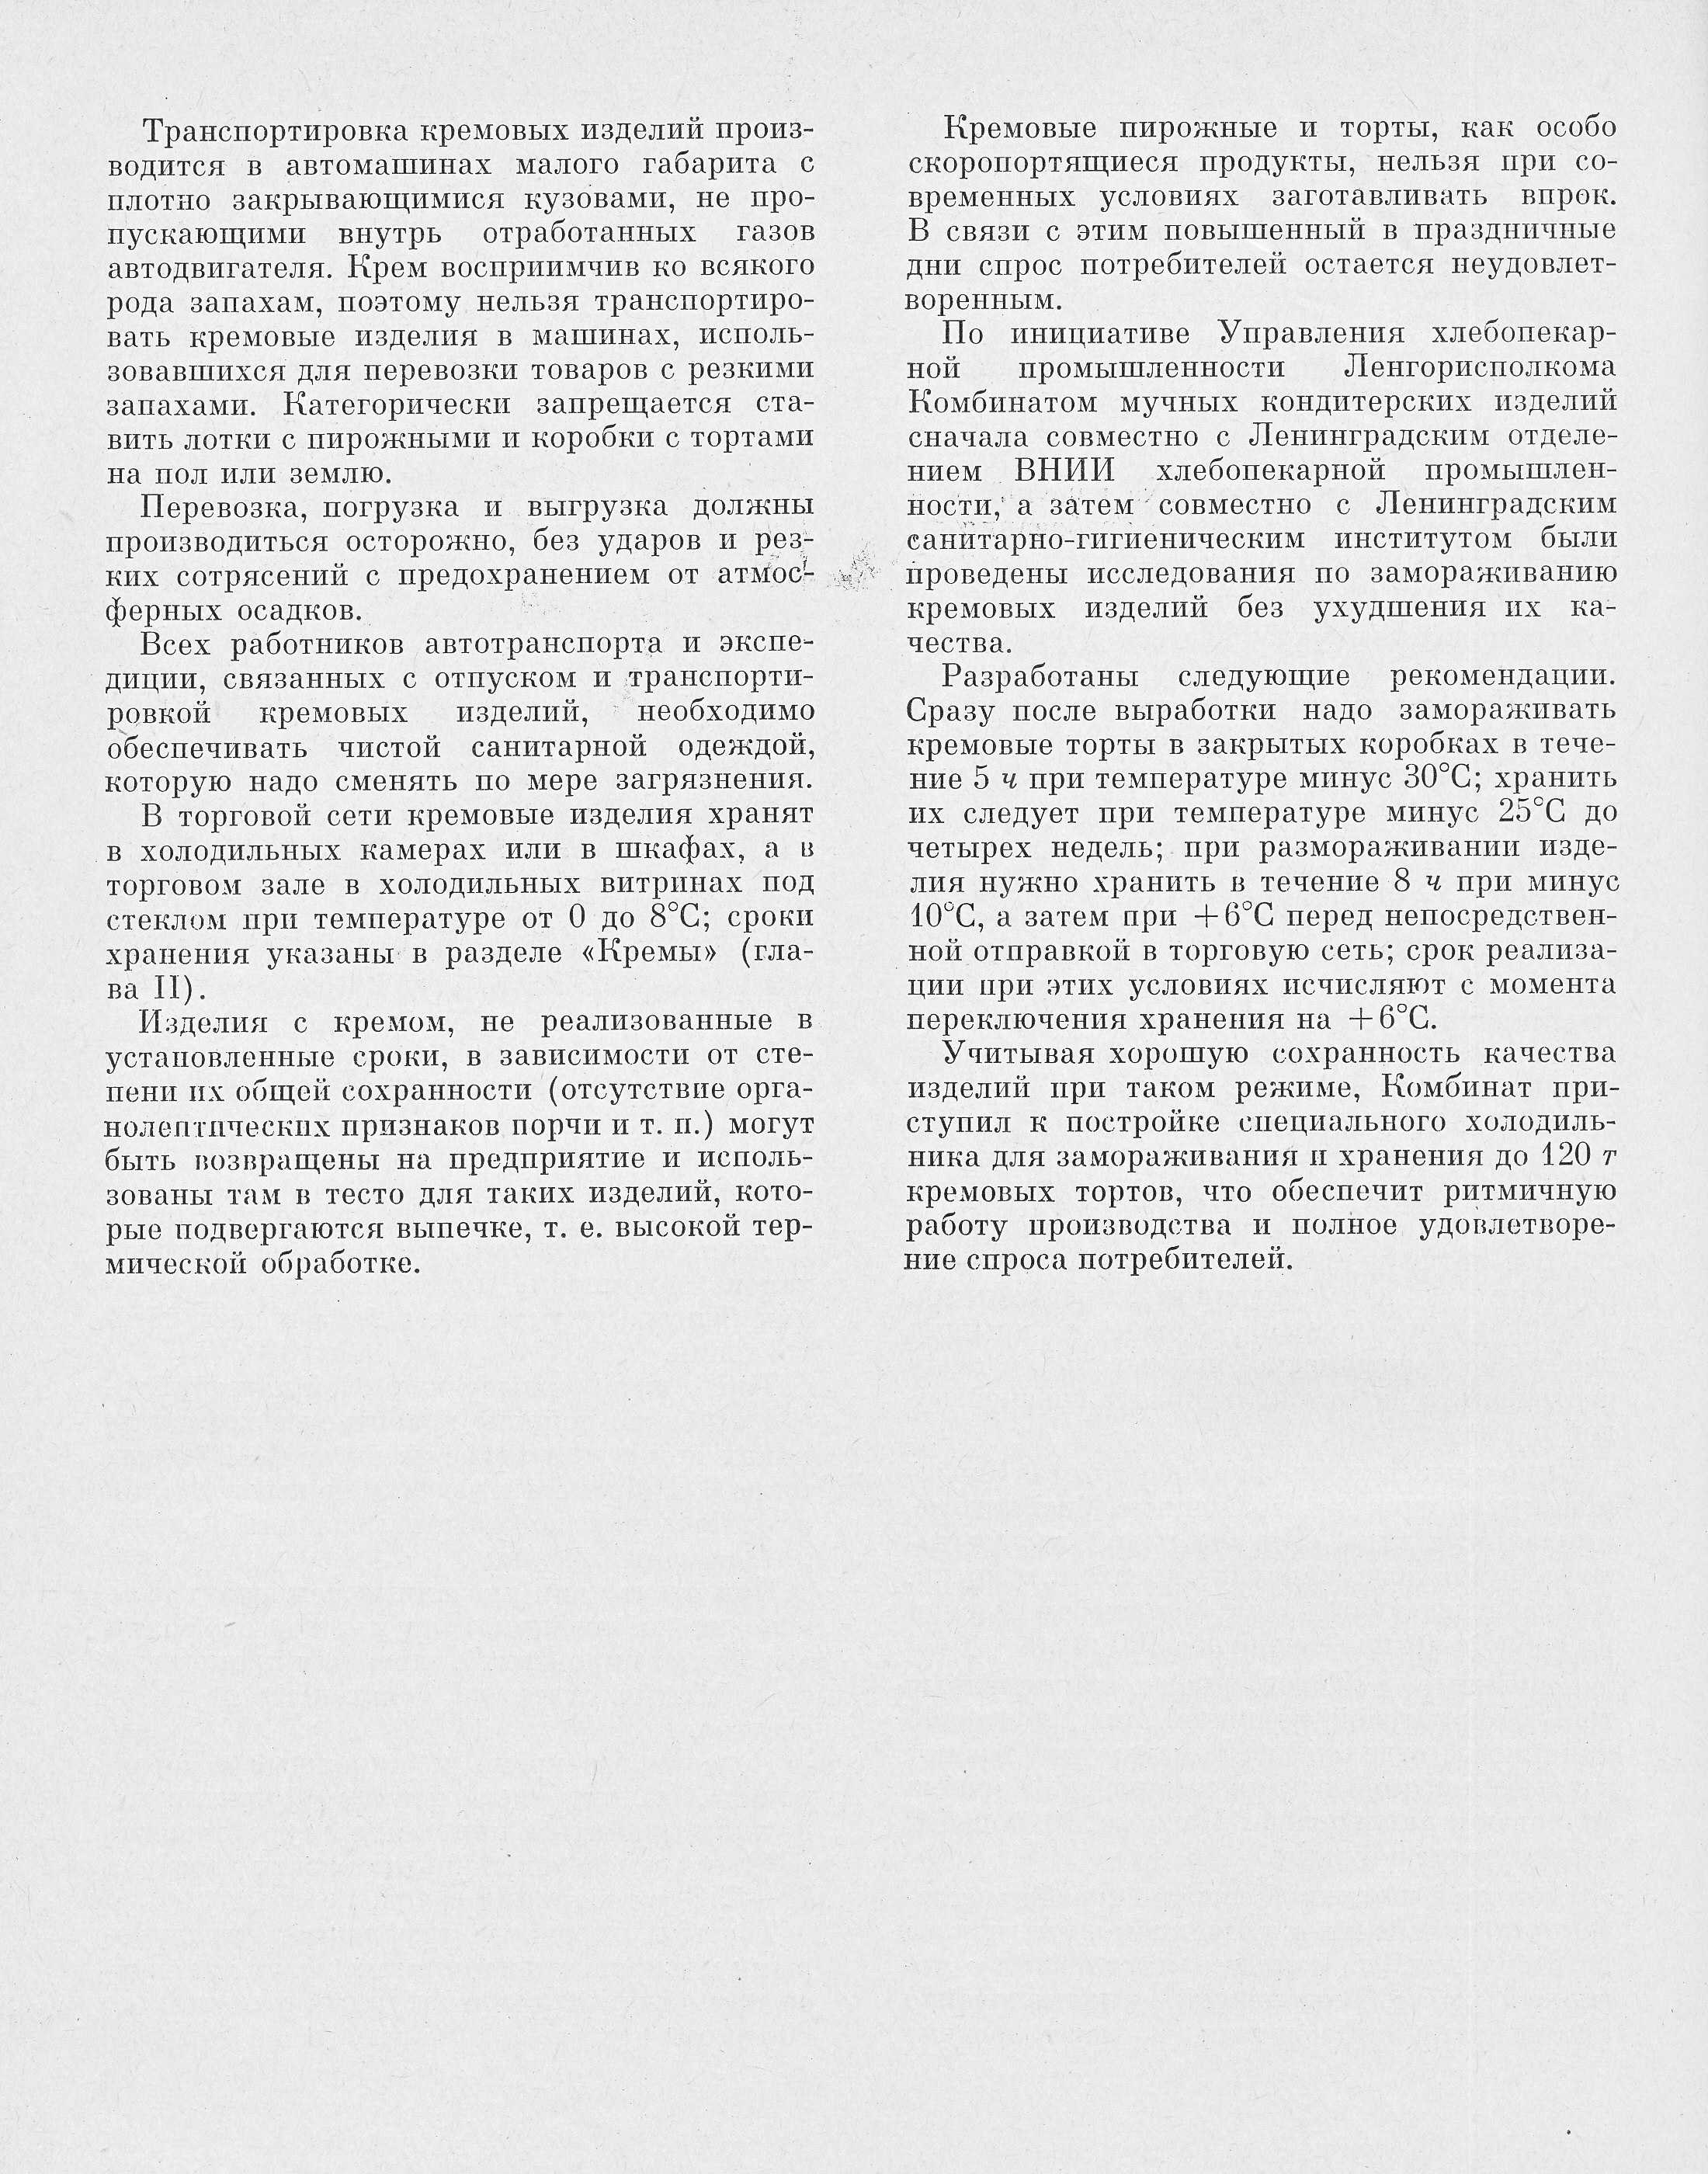 Производство пирожных и тортов П.С. Мархель, Ю.Л. Гопенштейн, С.В. Смелов 1974 г. страница 284